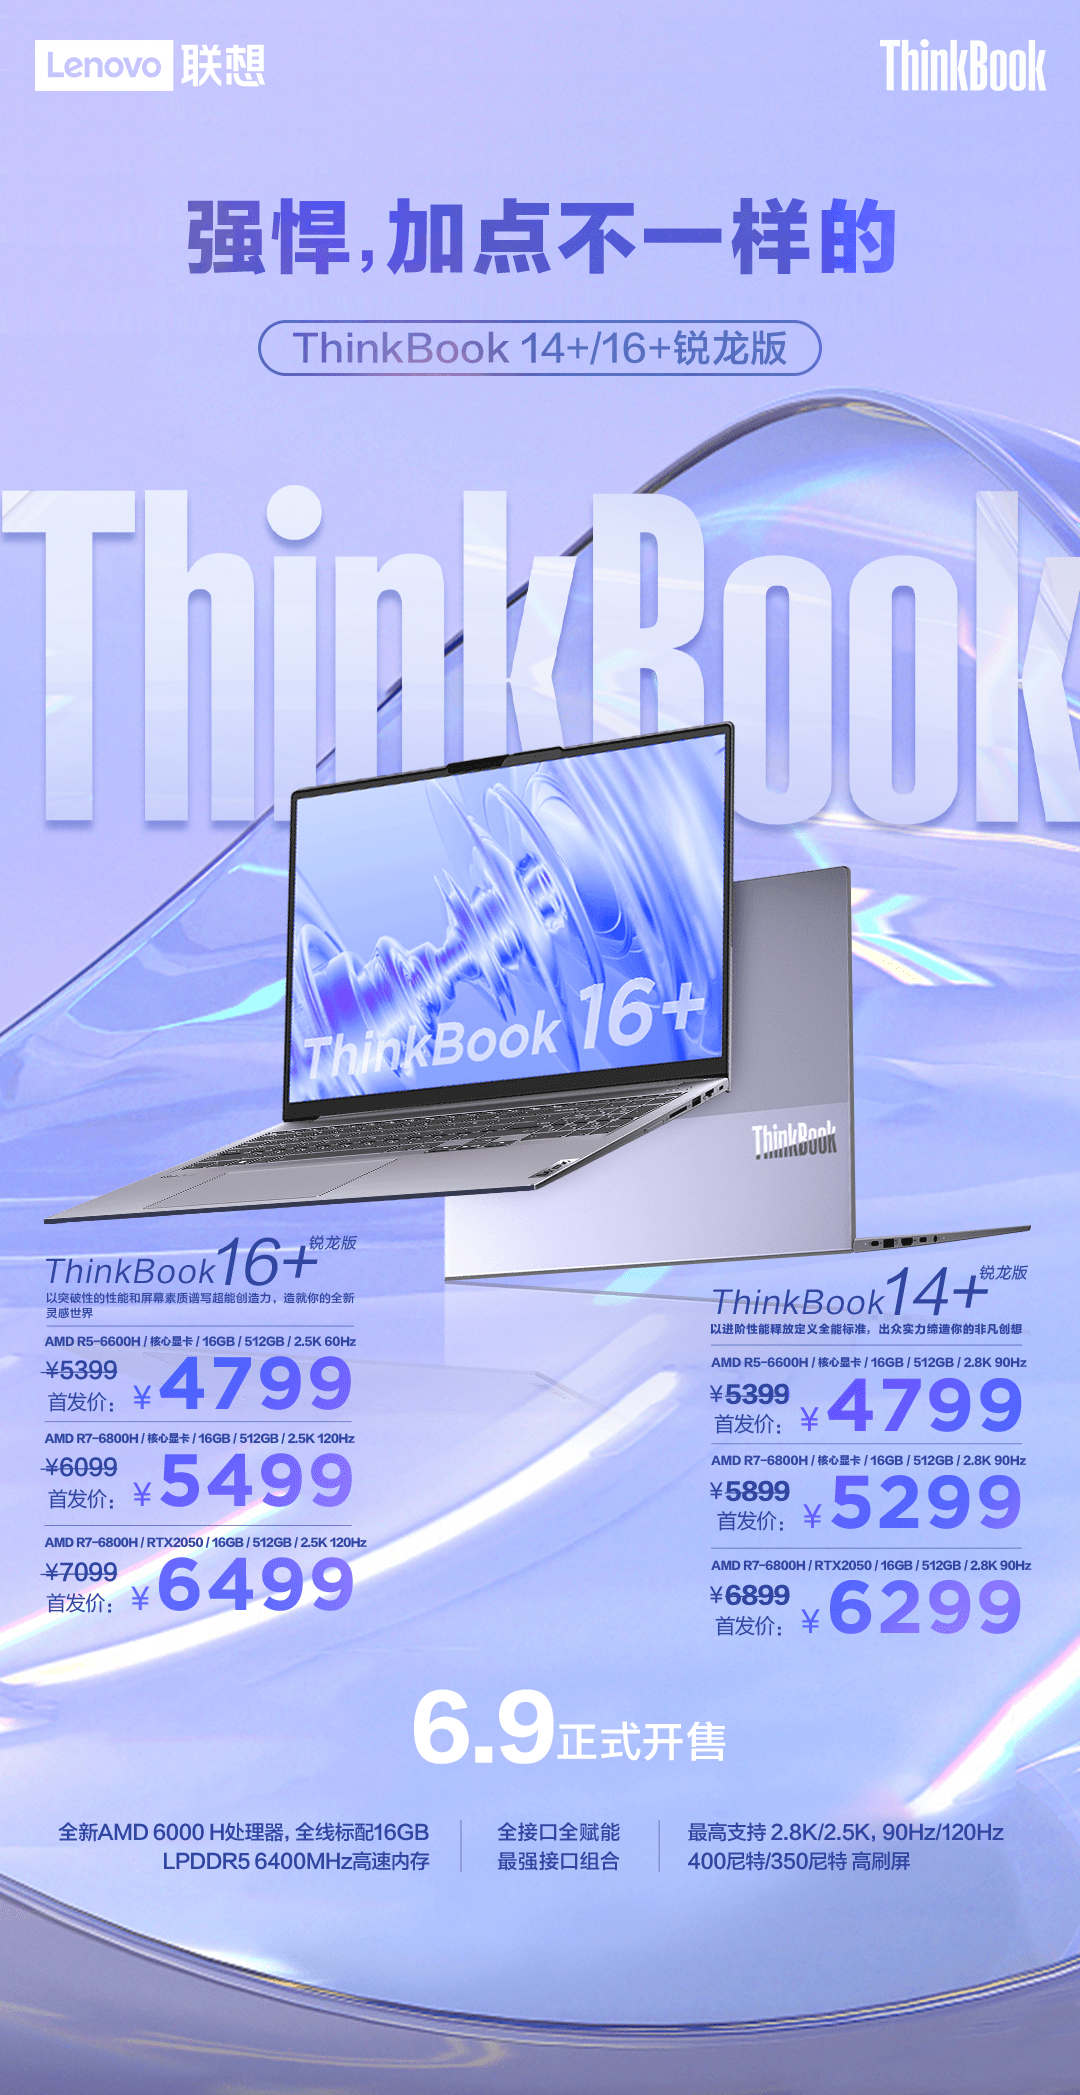 ThinkBook p系列新品全面开启预售 首发价6999起